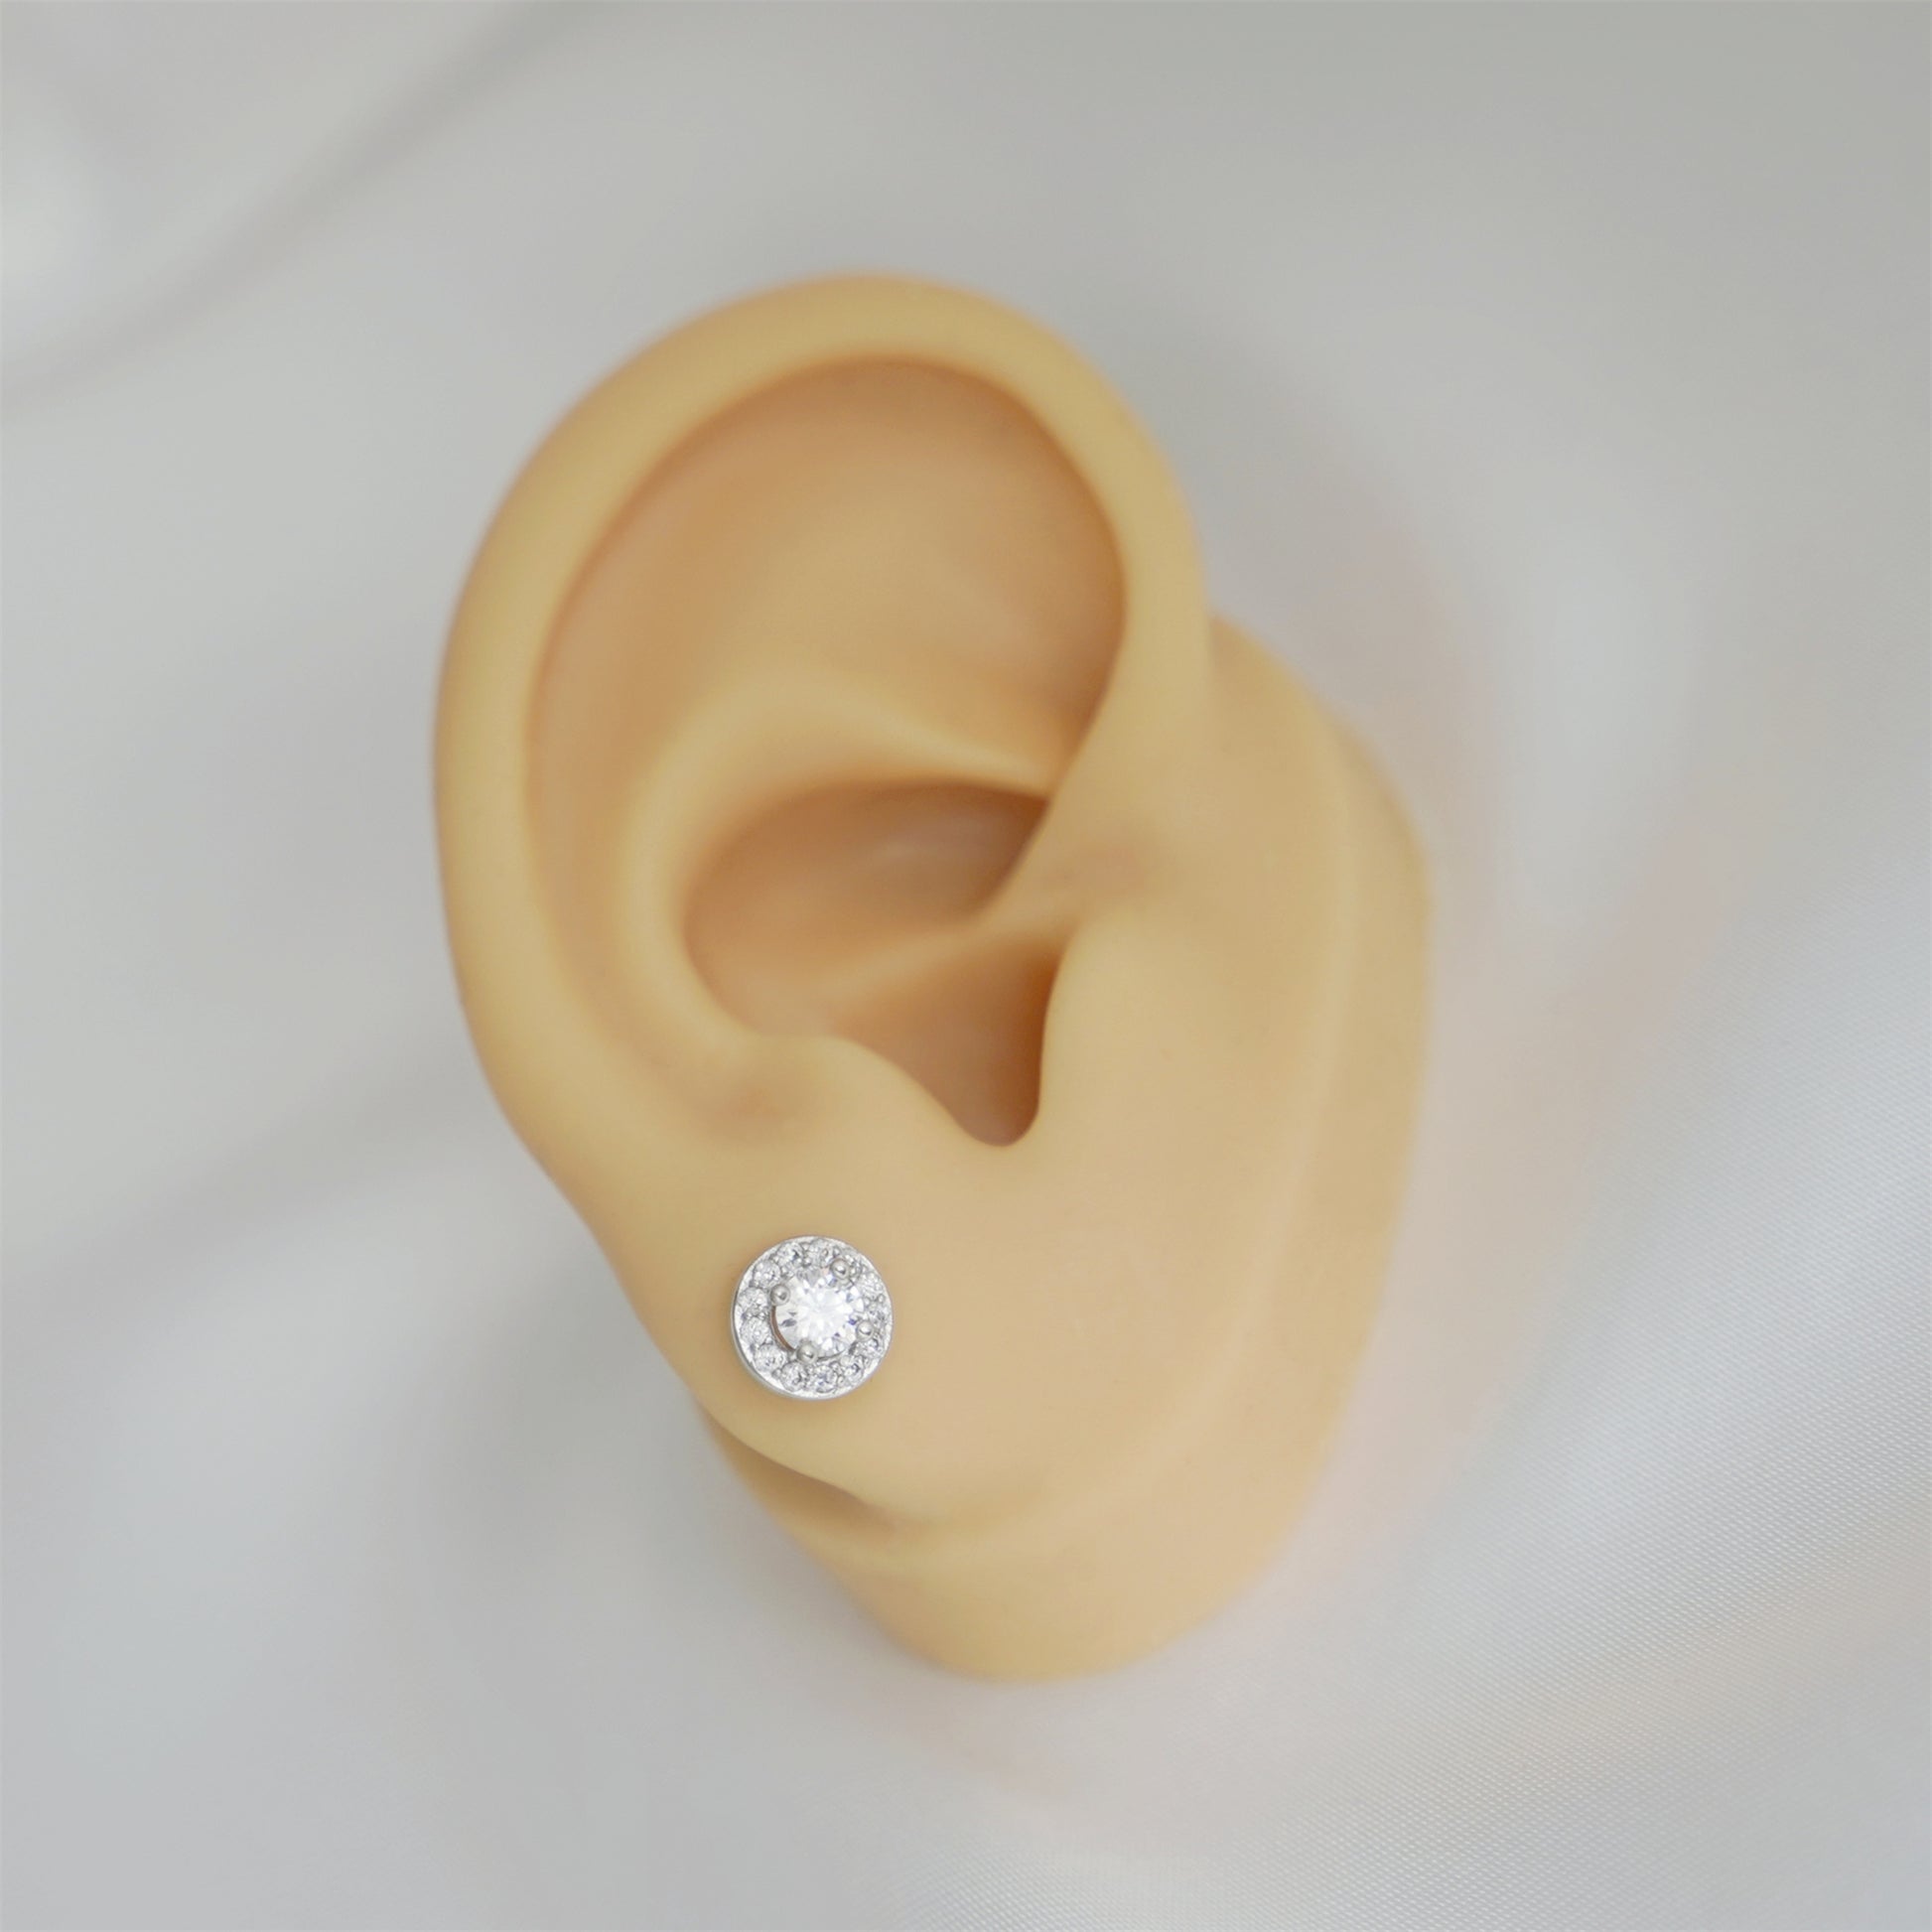 Sterling Silver Cubic Zirconia 7mm Halo Round  Stud Earrings Lady Jewellery - sugarkittenlondon